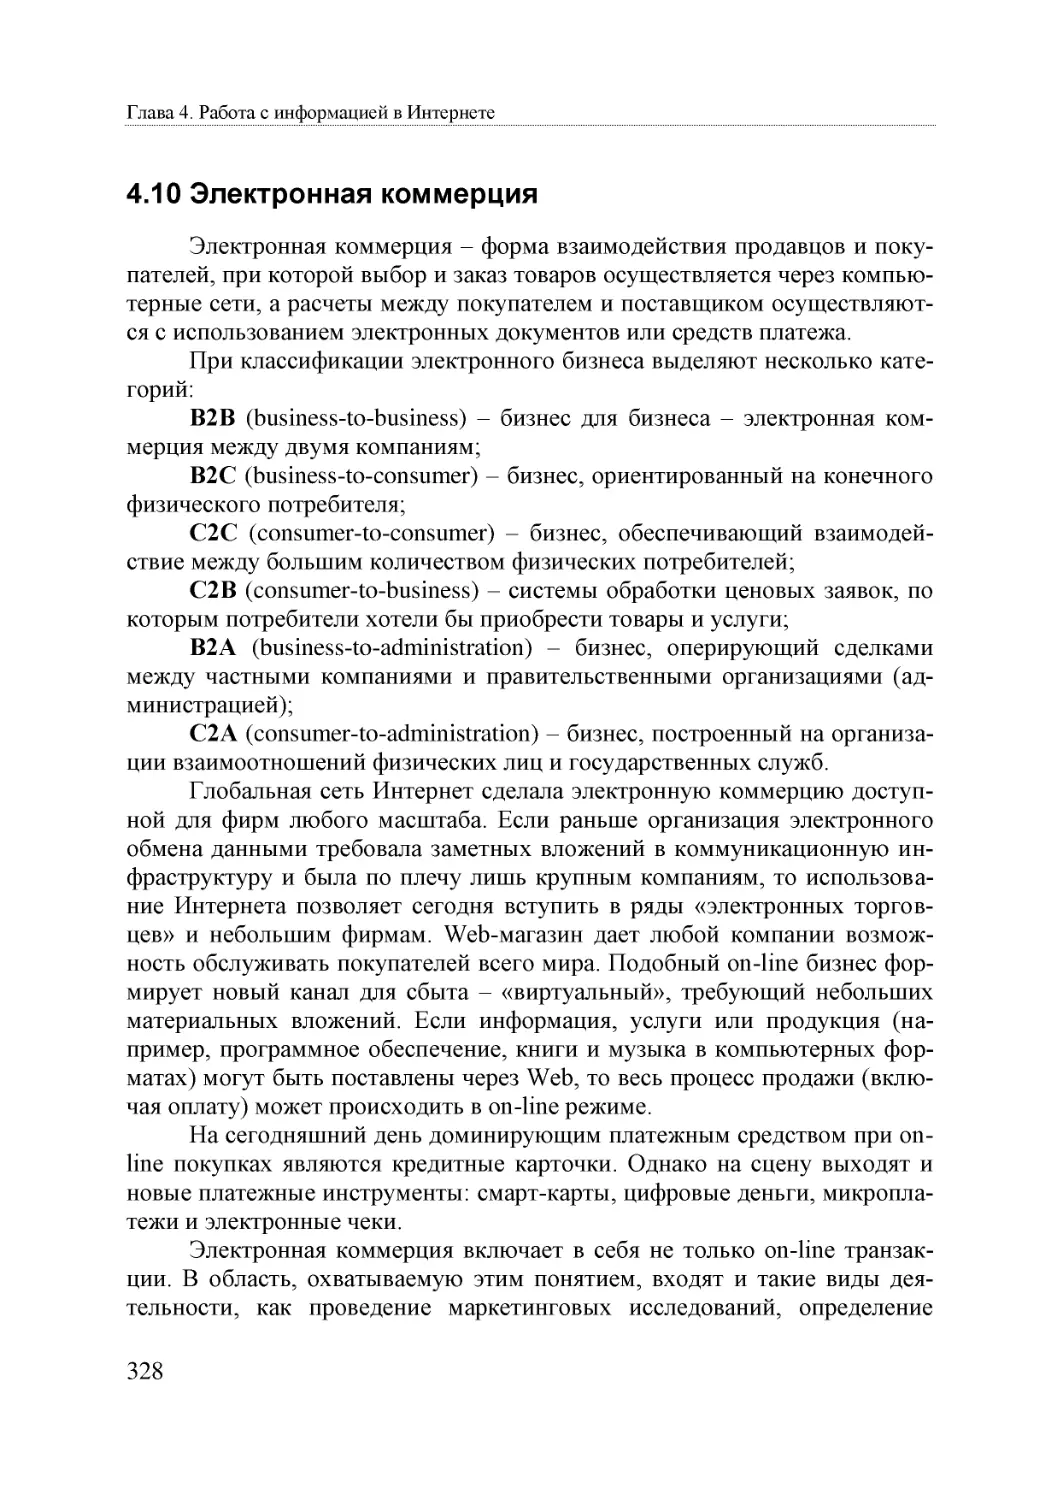 Informatika_Uchebnik_dlya_vuzov_2010 328